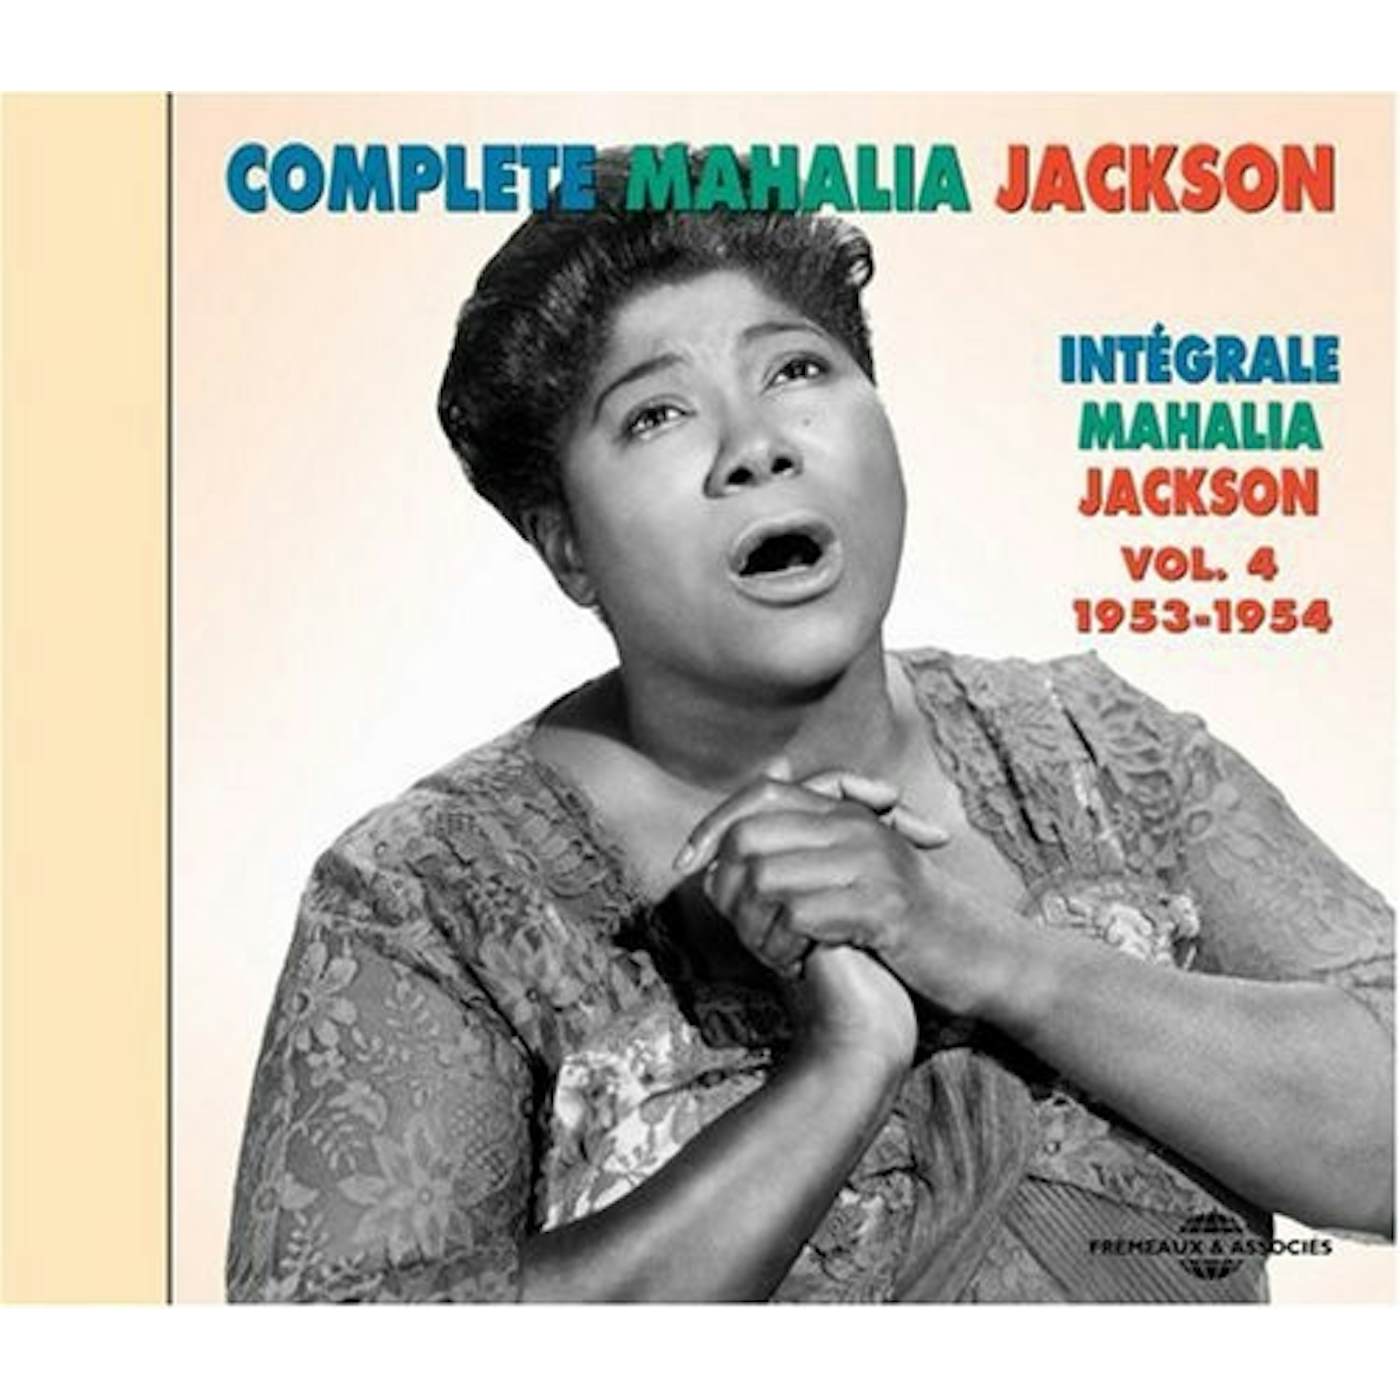 COMPLETE MAHALIA JACKSON 4 1953-1954 CD